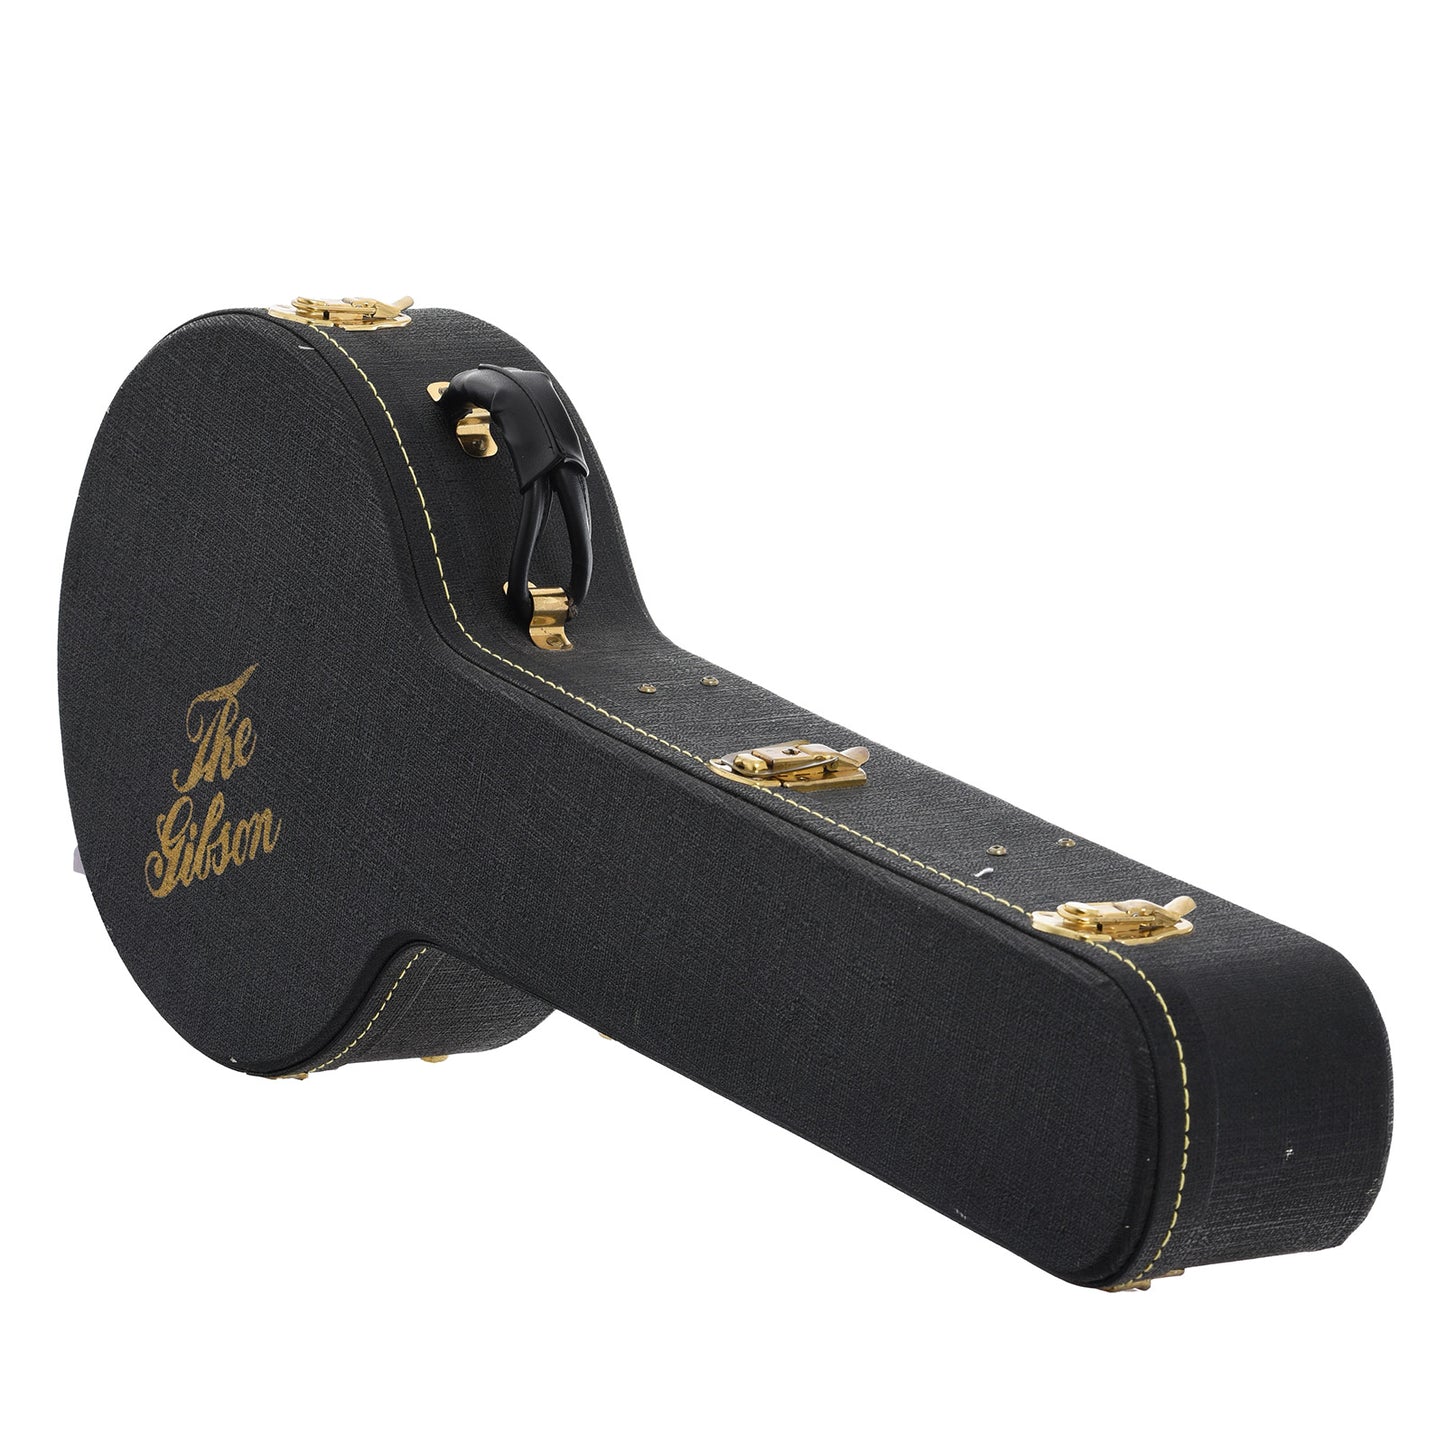 Case for Gibson Granada 5-String Resonator Banjo (2009)